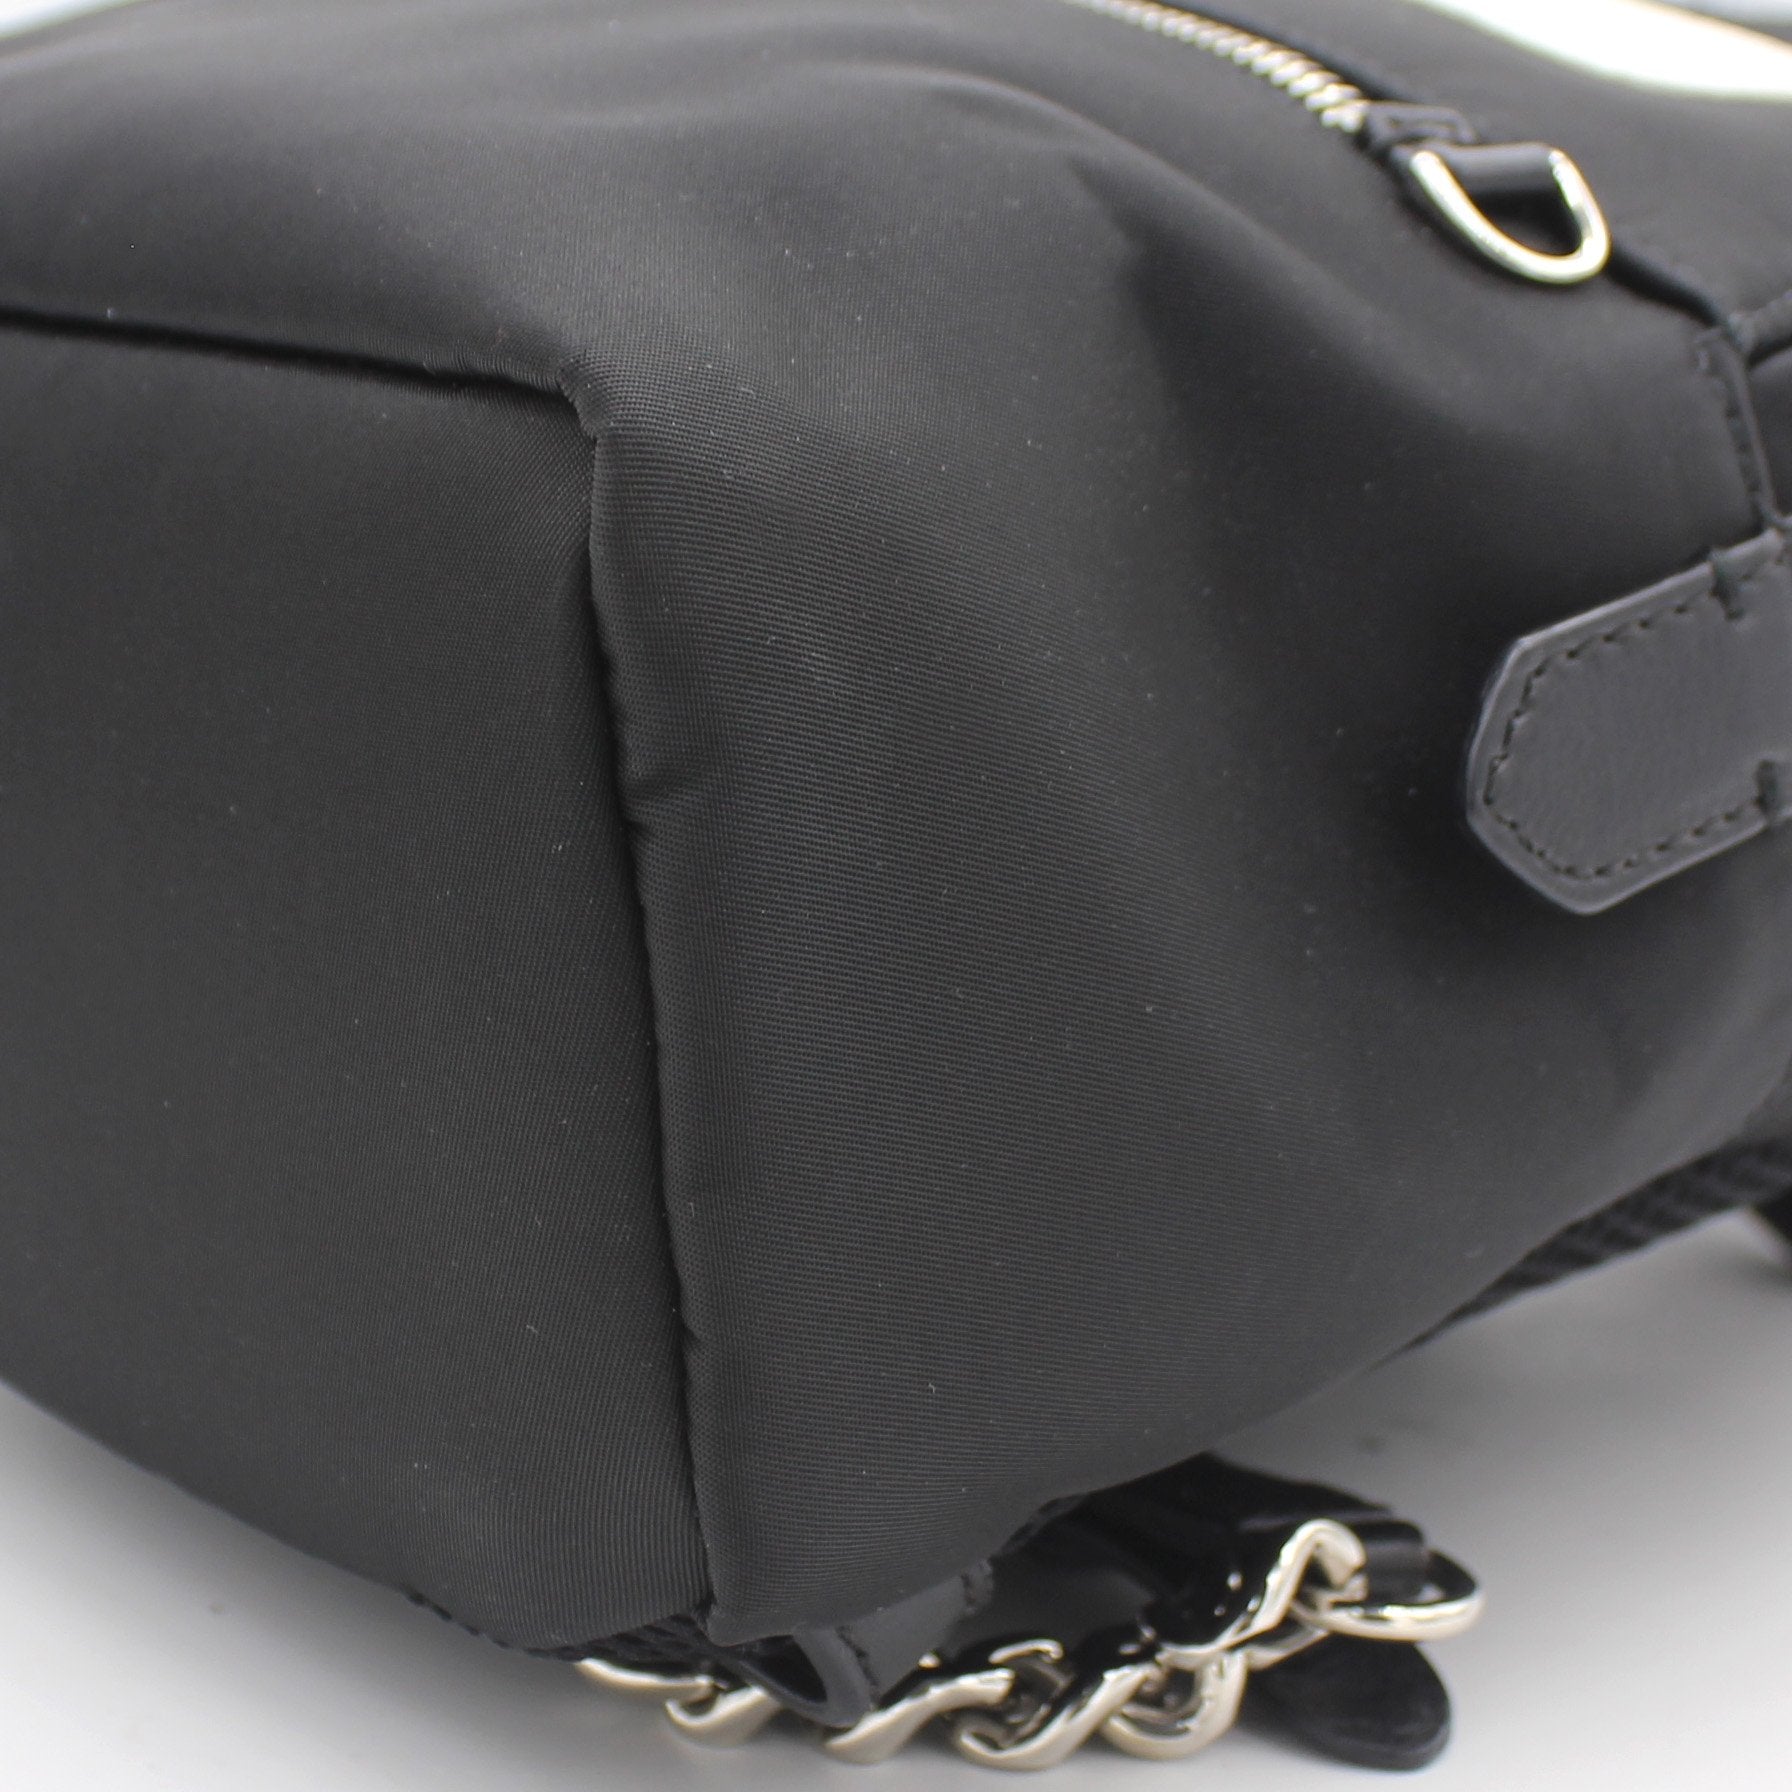 Black Nylon and Leather Monster Eyes Mini Backpack Bag